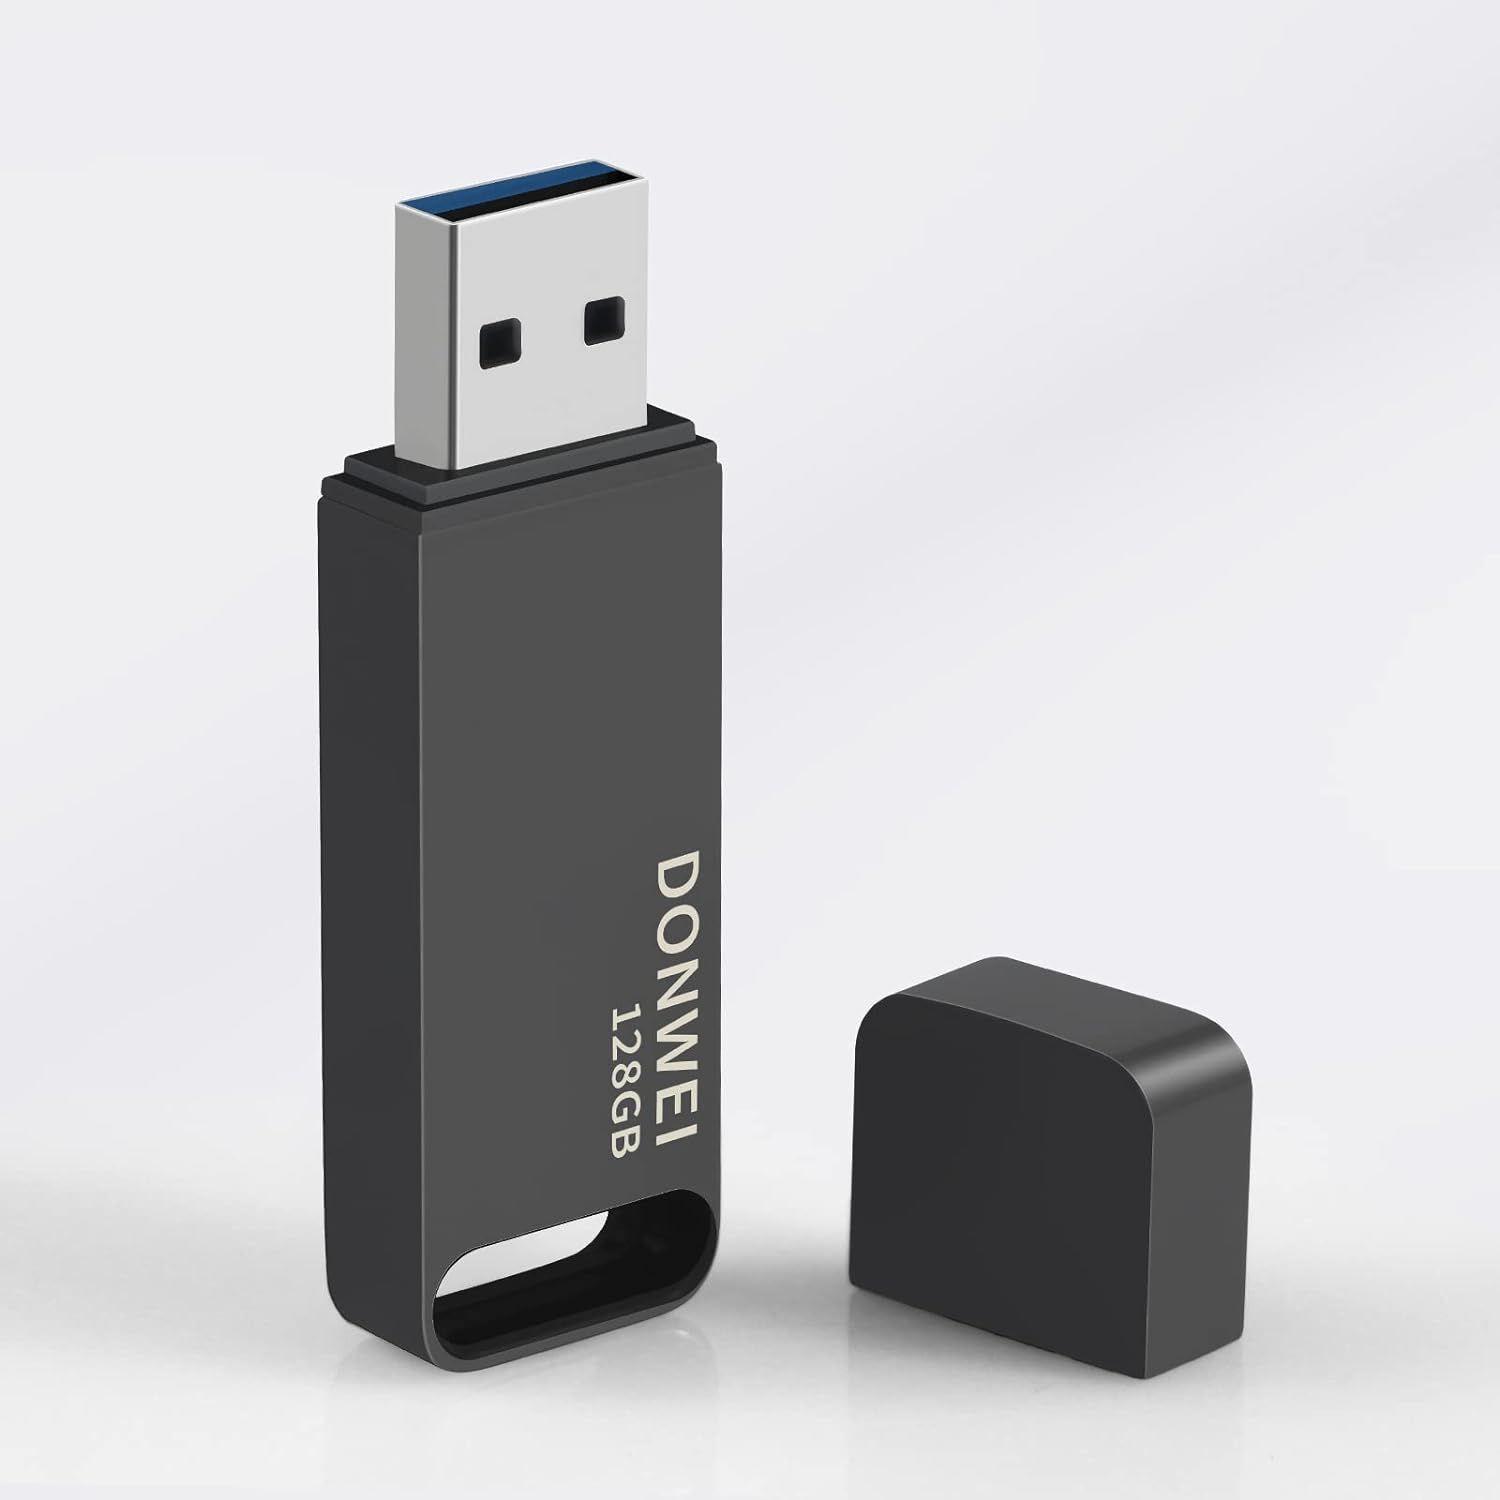 Clé USB, clé USB de stockage externe Photo Memory Stick Compatible